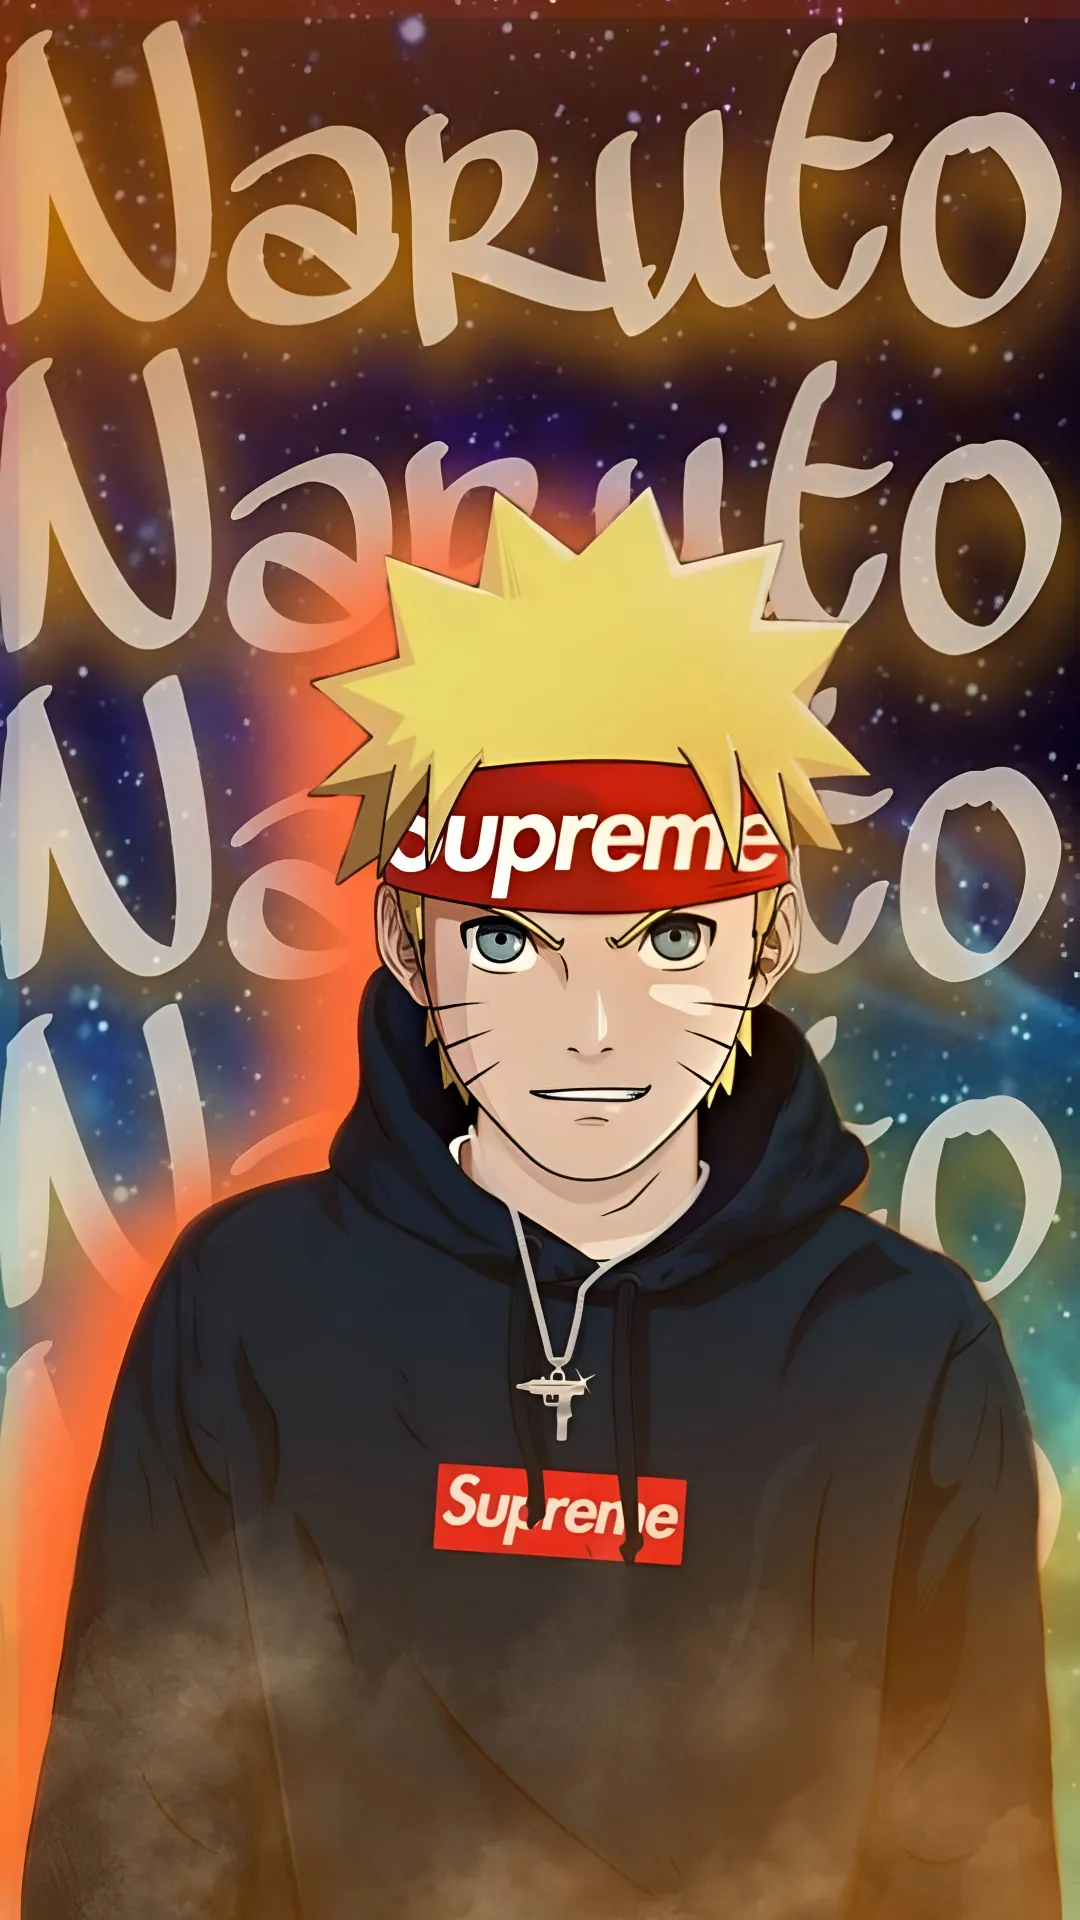 thumb for Naruto Supreme Wallpaper